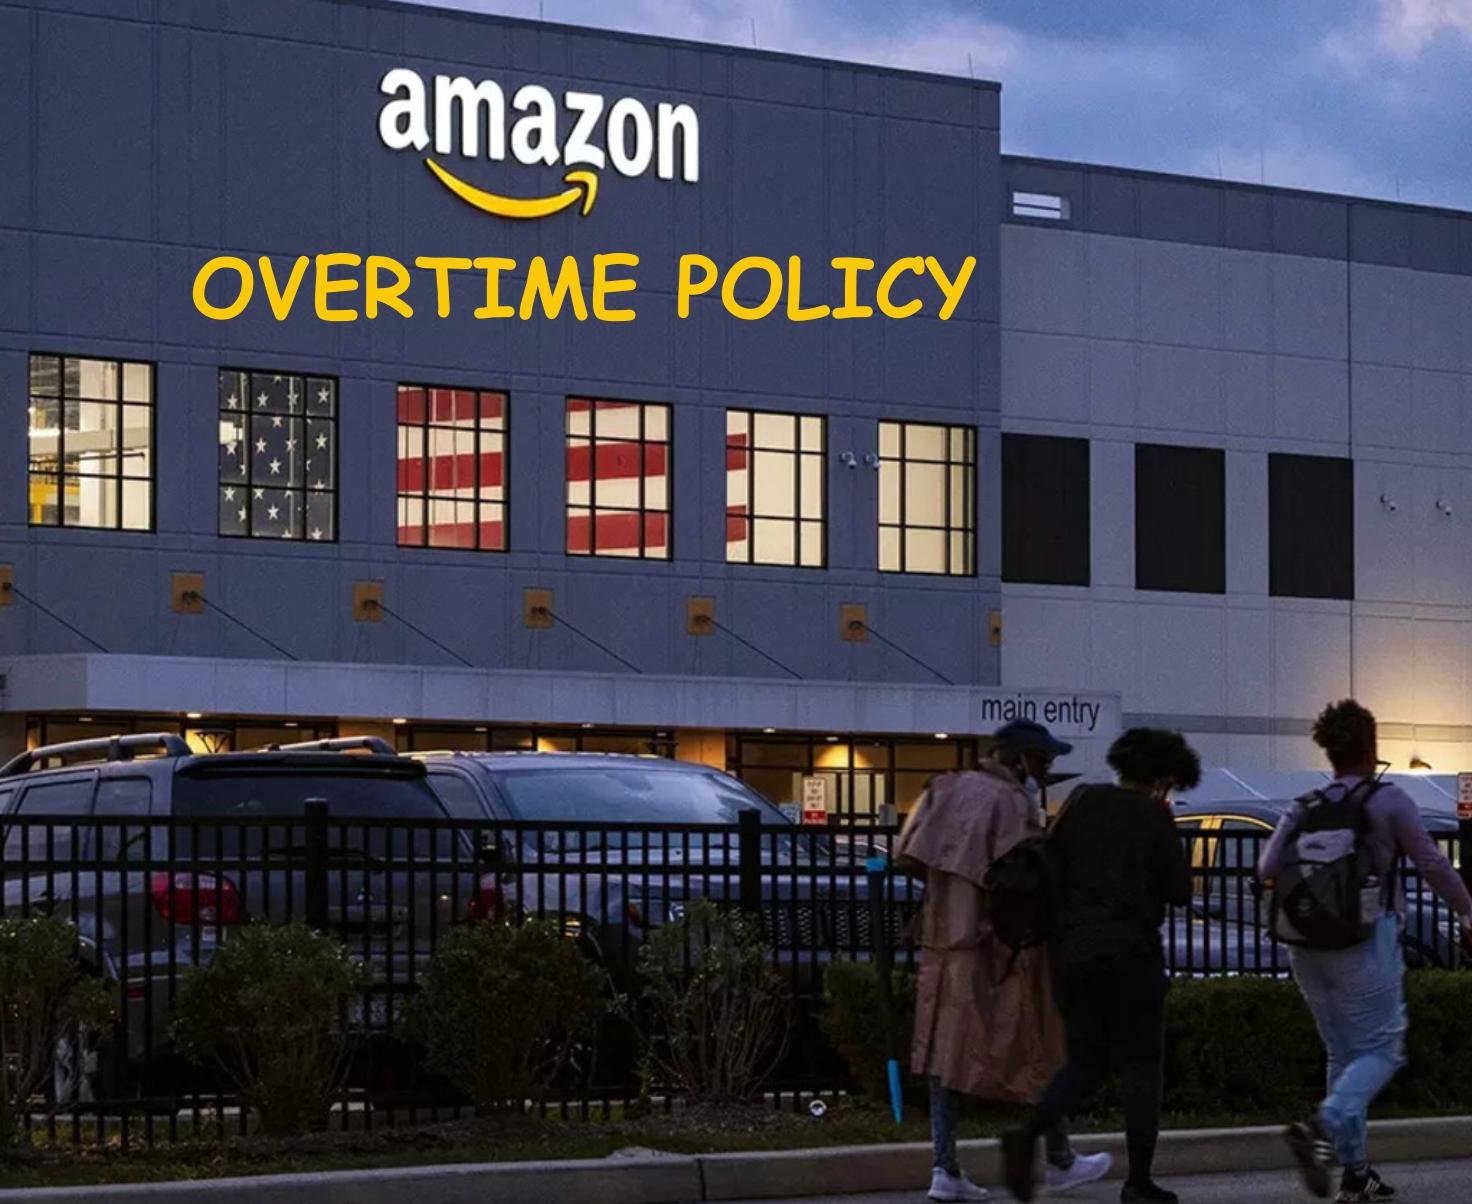 amazon overtime policy